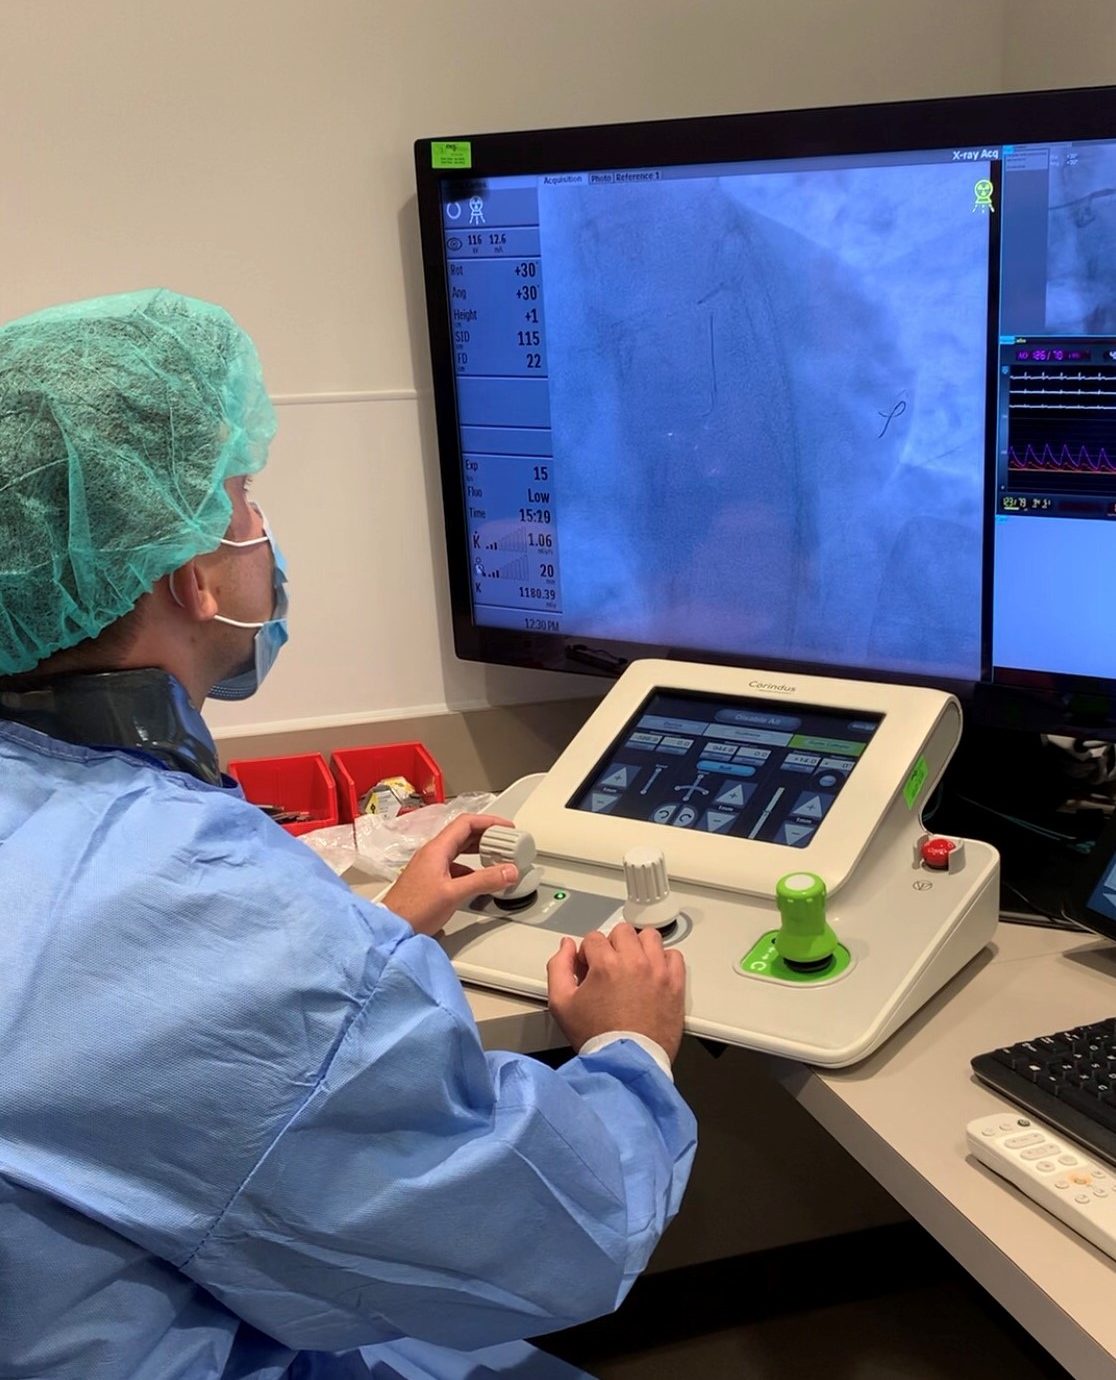 นักศึกษาแพทย์ที่จบจากมหาวิทยาลัยเซนต์จอร์จ เป็นหนึ่งในทีมศัลยแพทย์ผ่าตัดหัวใจด้วยเทคโนโลยีหุ่นยนต์ครั้งแรกในโลก